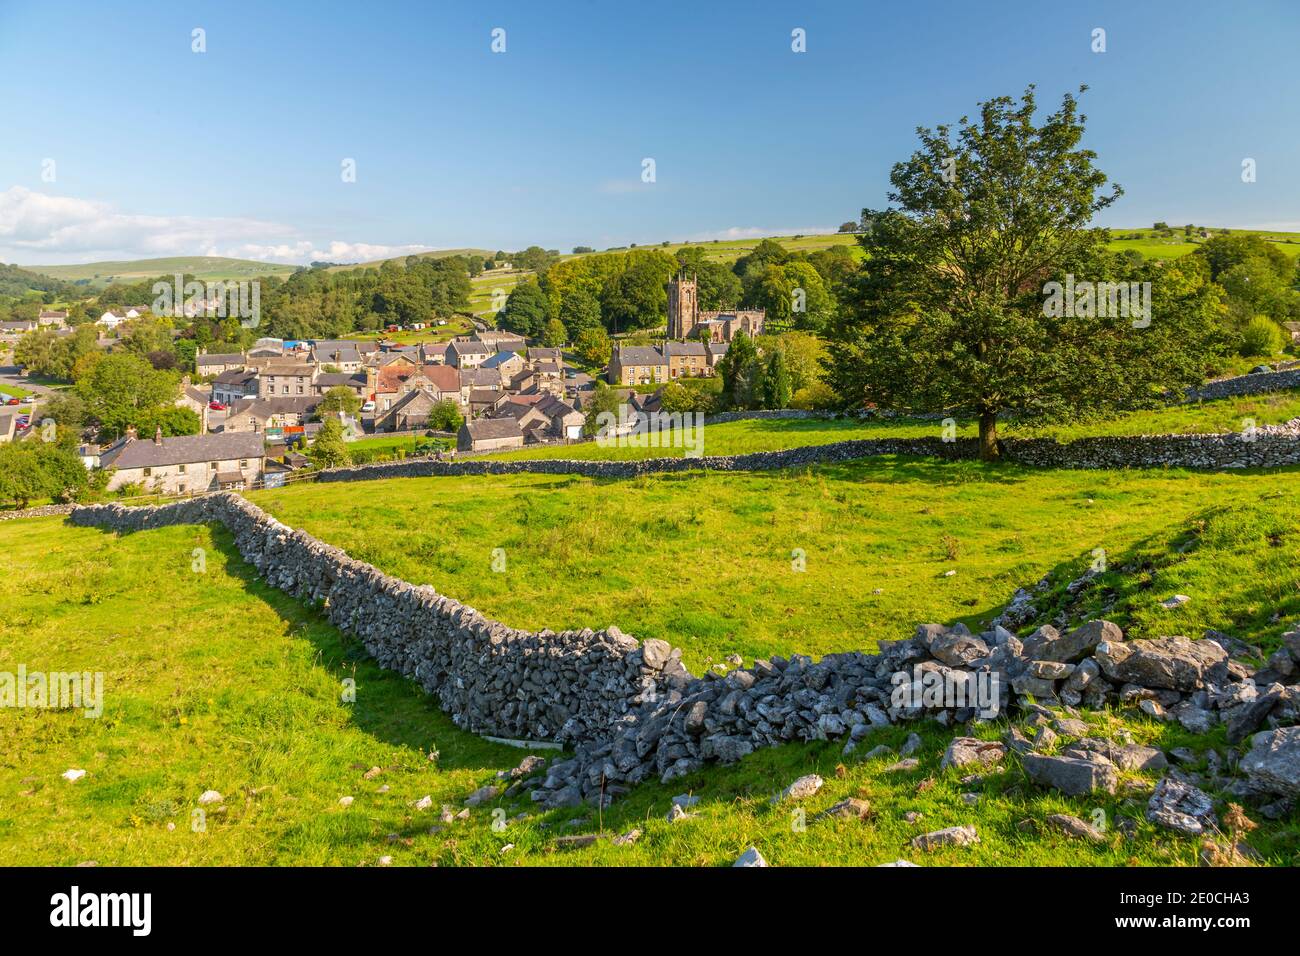 Blick auf Dorfkirche, Hütten und Trockenmauern, Hartington, Peak District National Park, Derbyshire, England, Großbritannien, Europa Stockfoto